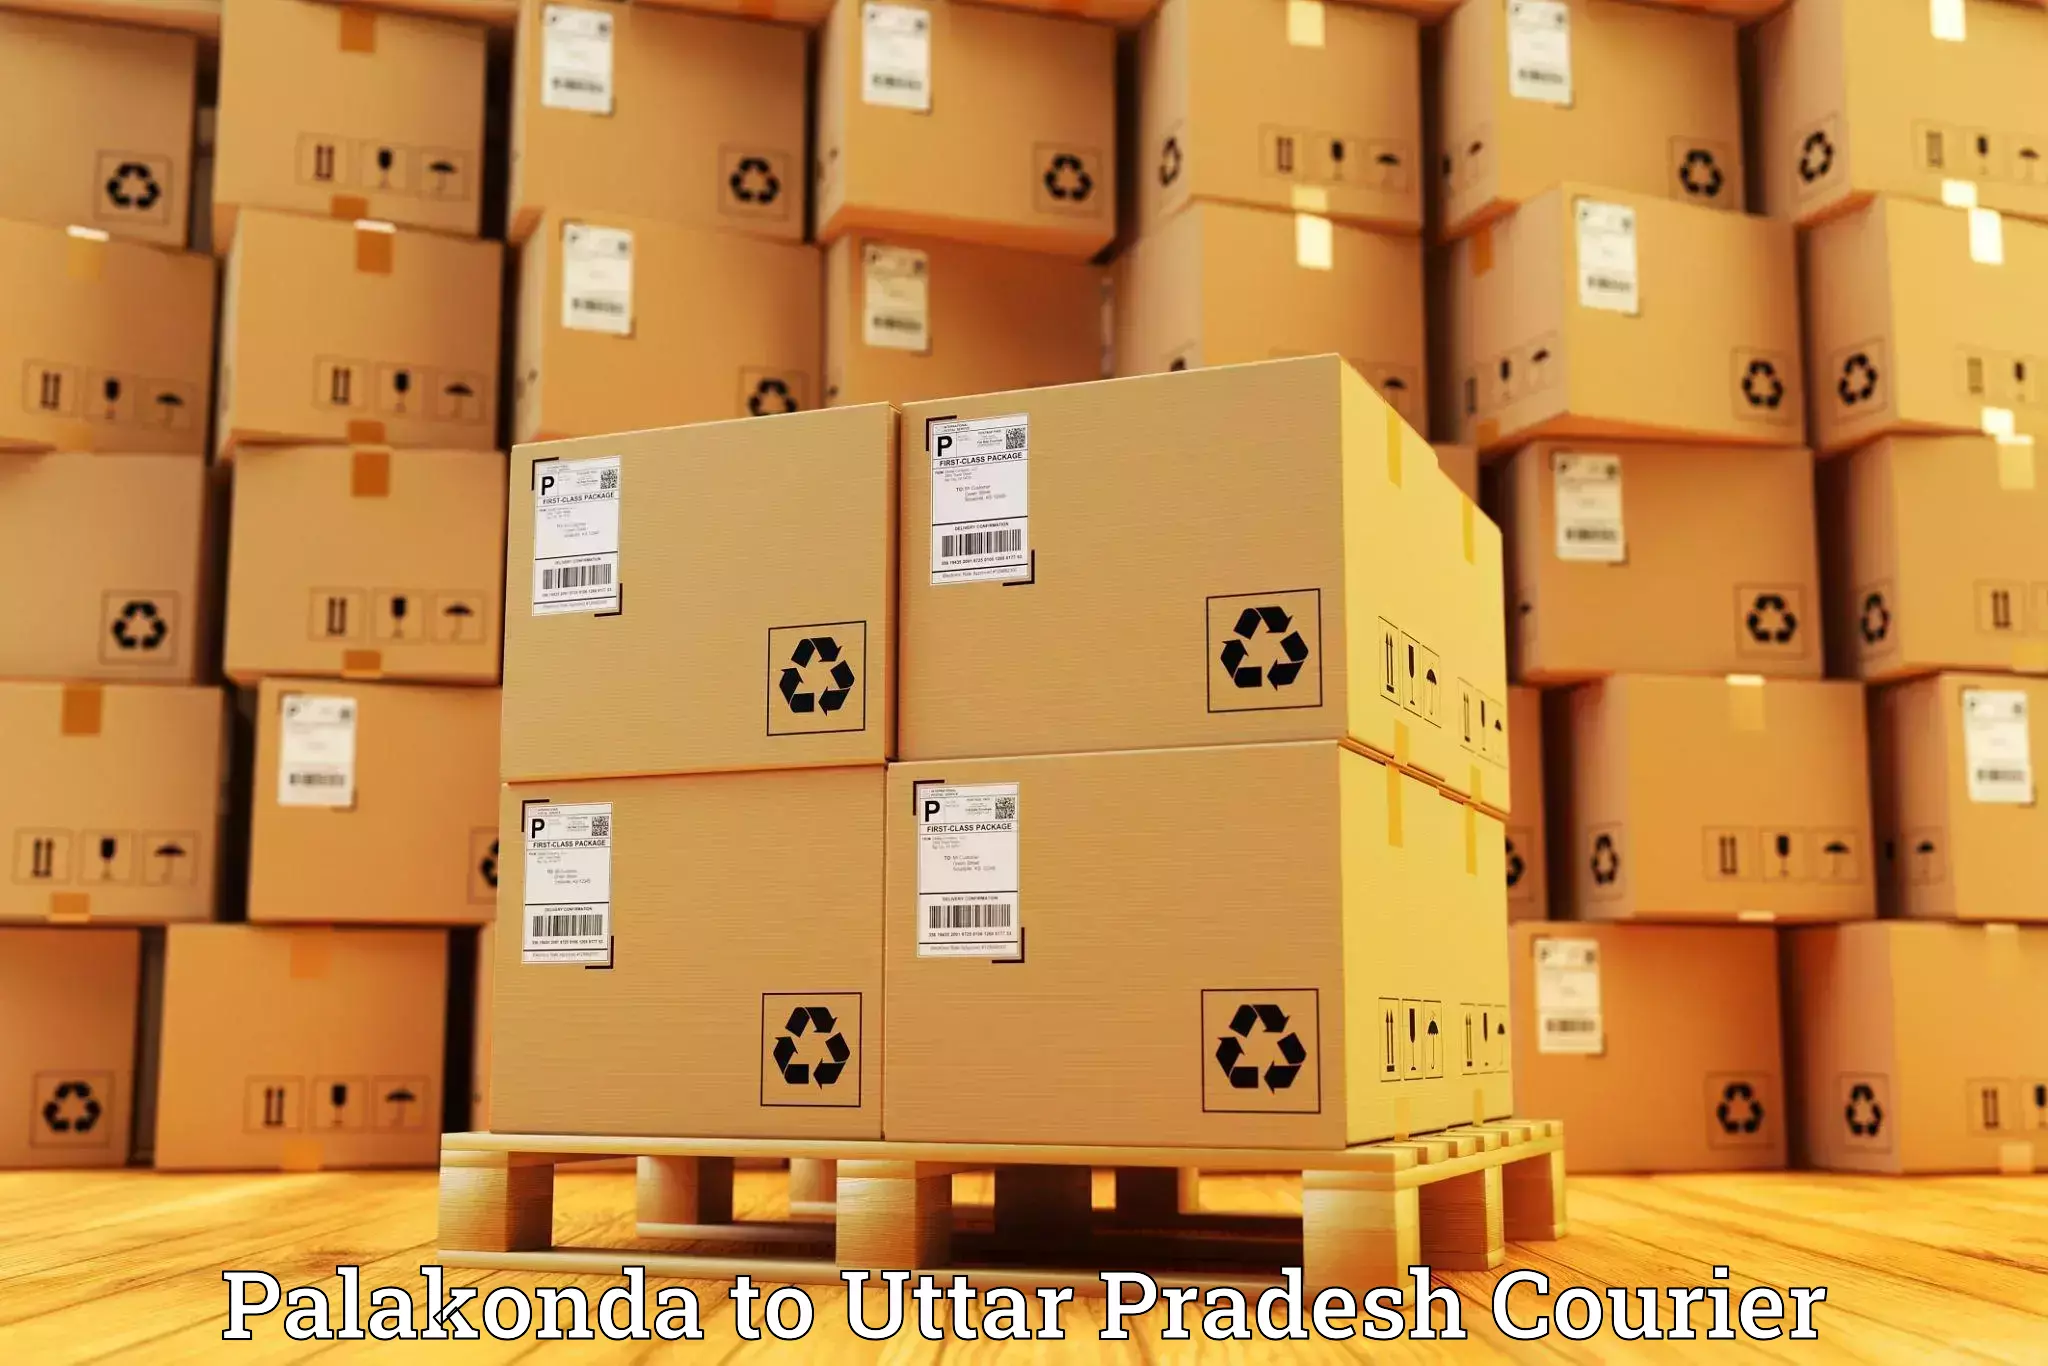 Holiday shipping services Palakonda to IIT Varanasi